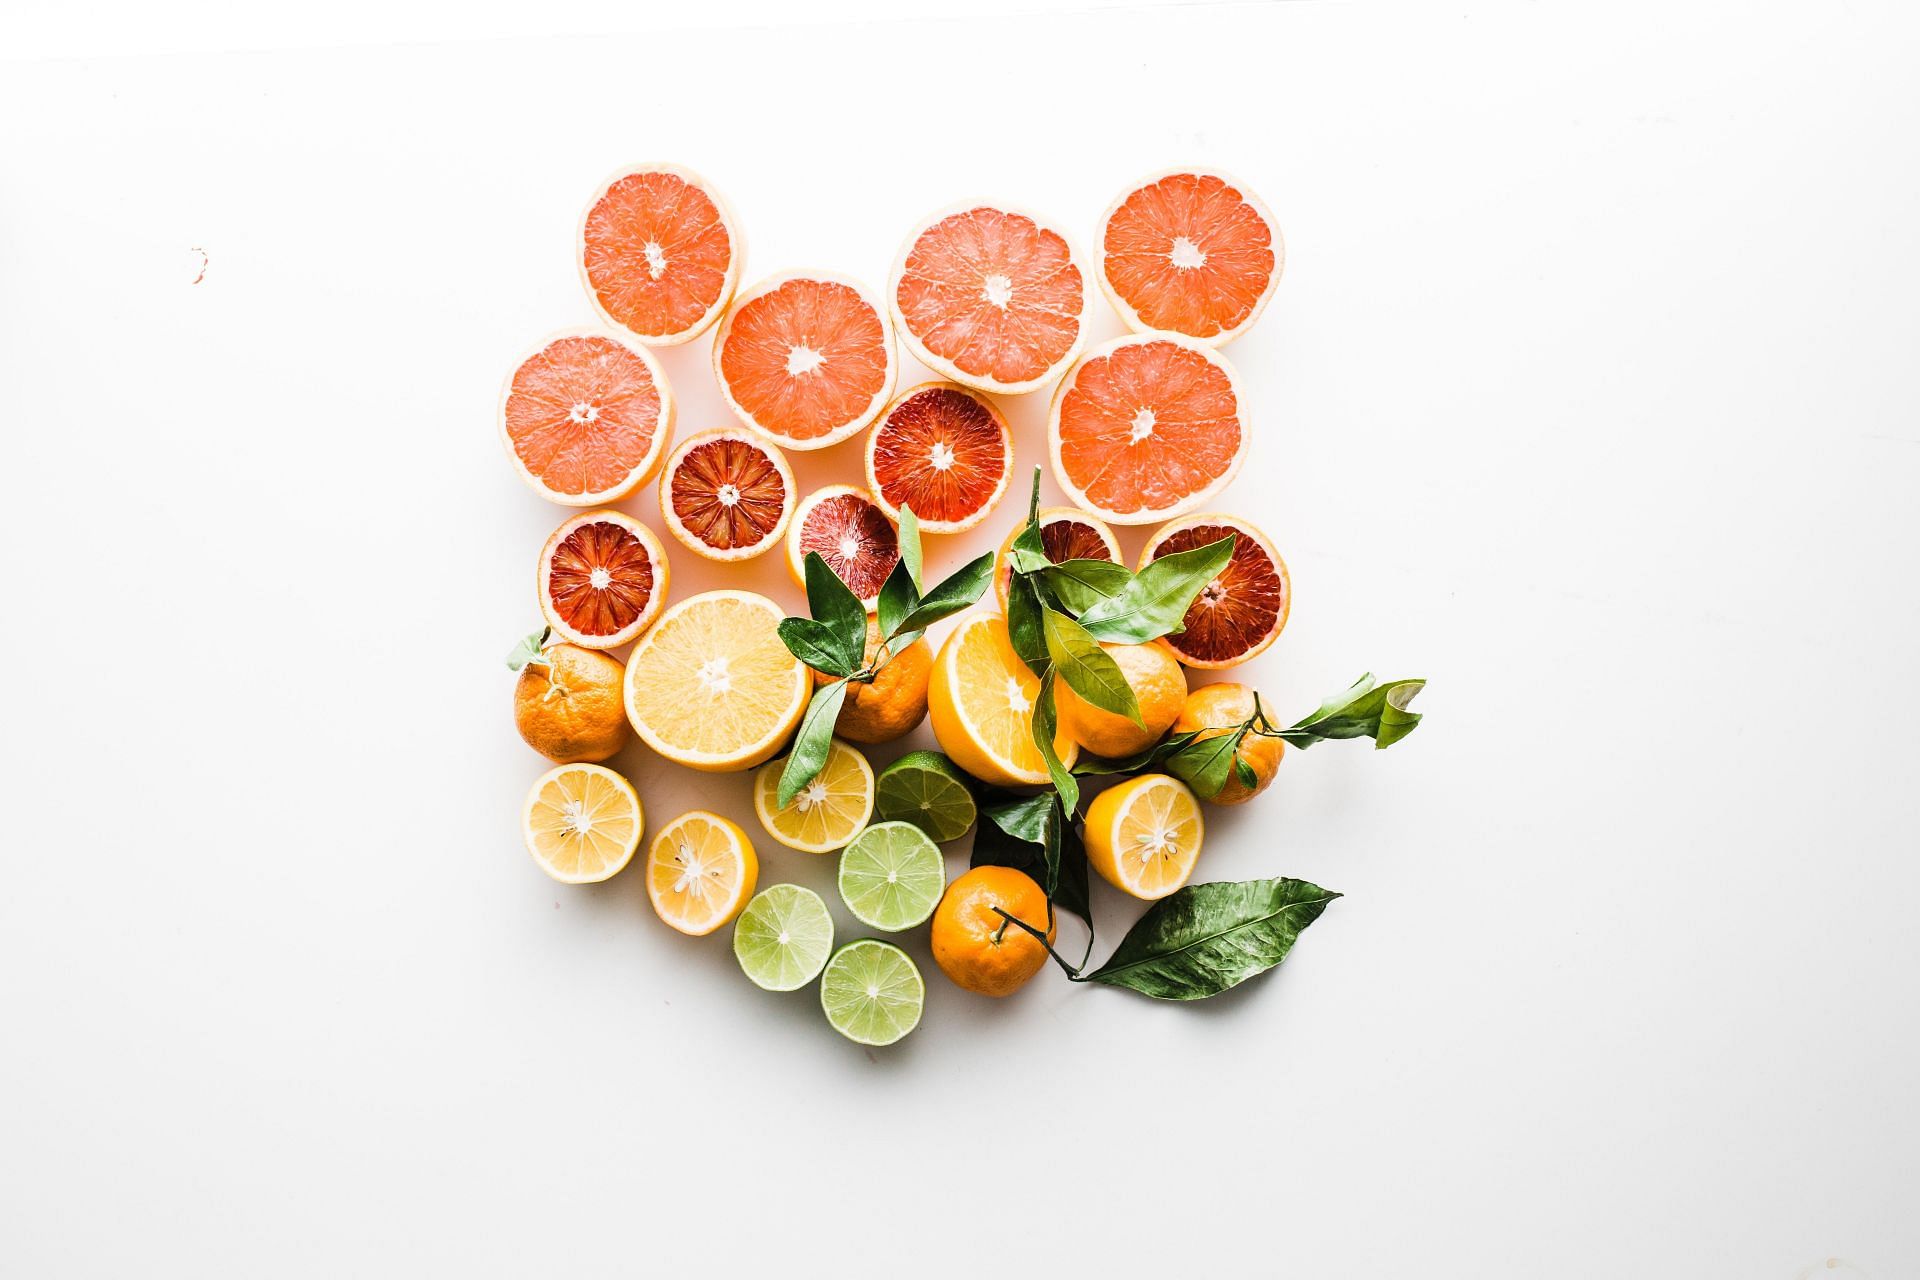 Side effects of blood orange. (Image via Unsplash/Brooke Lark)